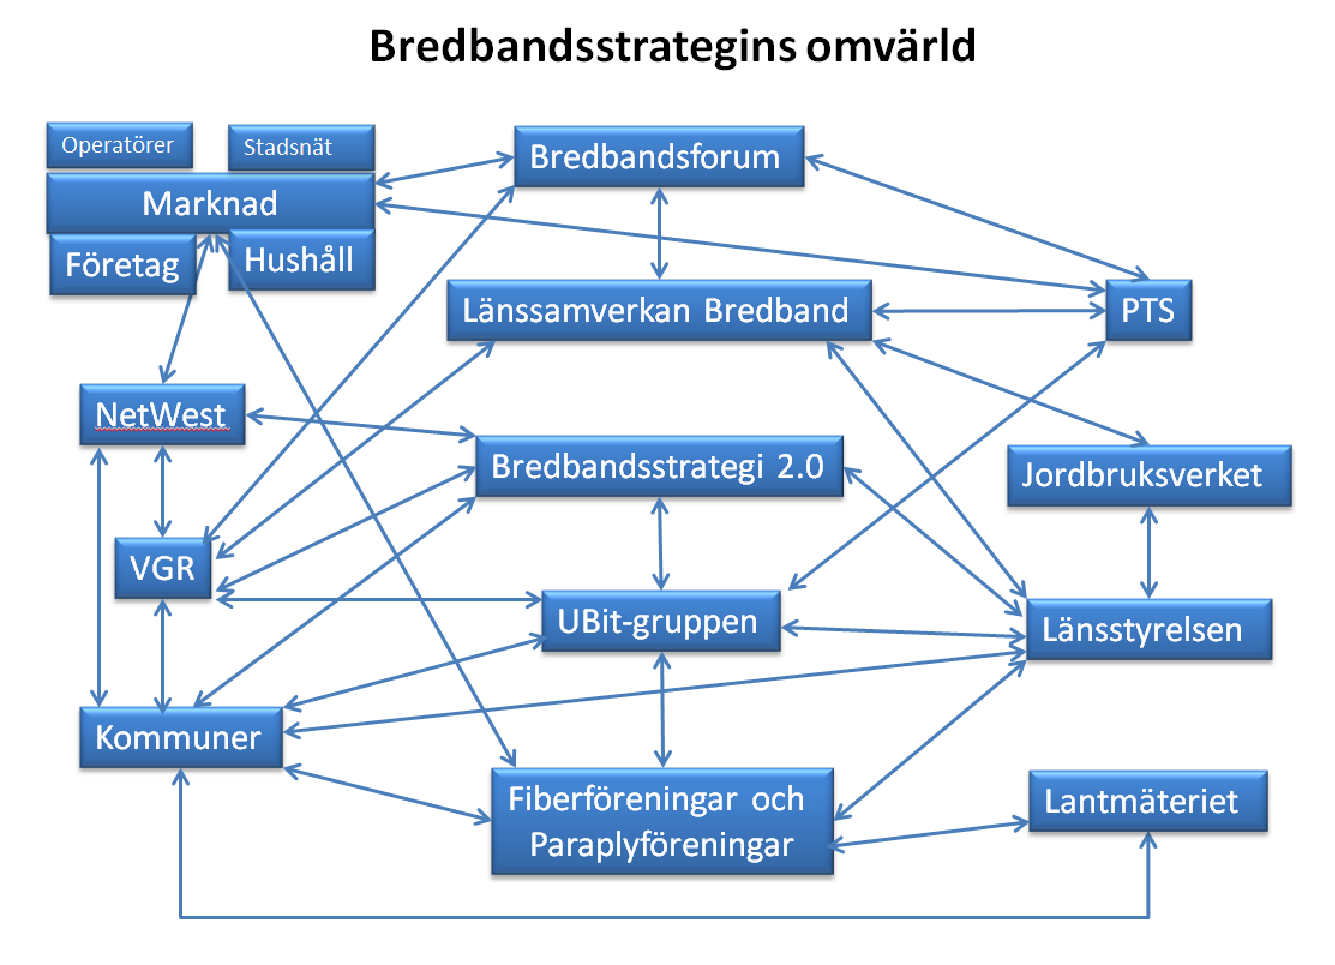 Bredbandsstrategi 2.